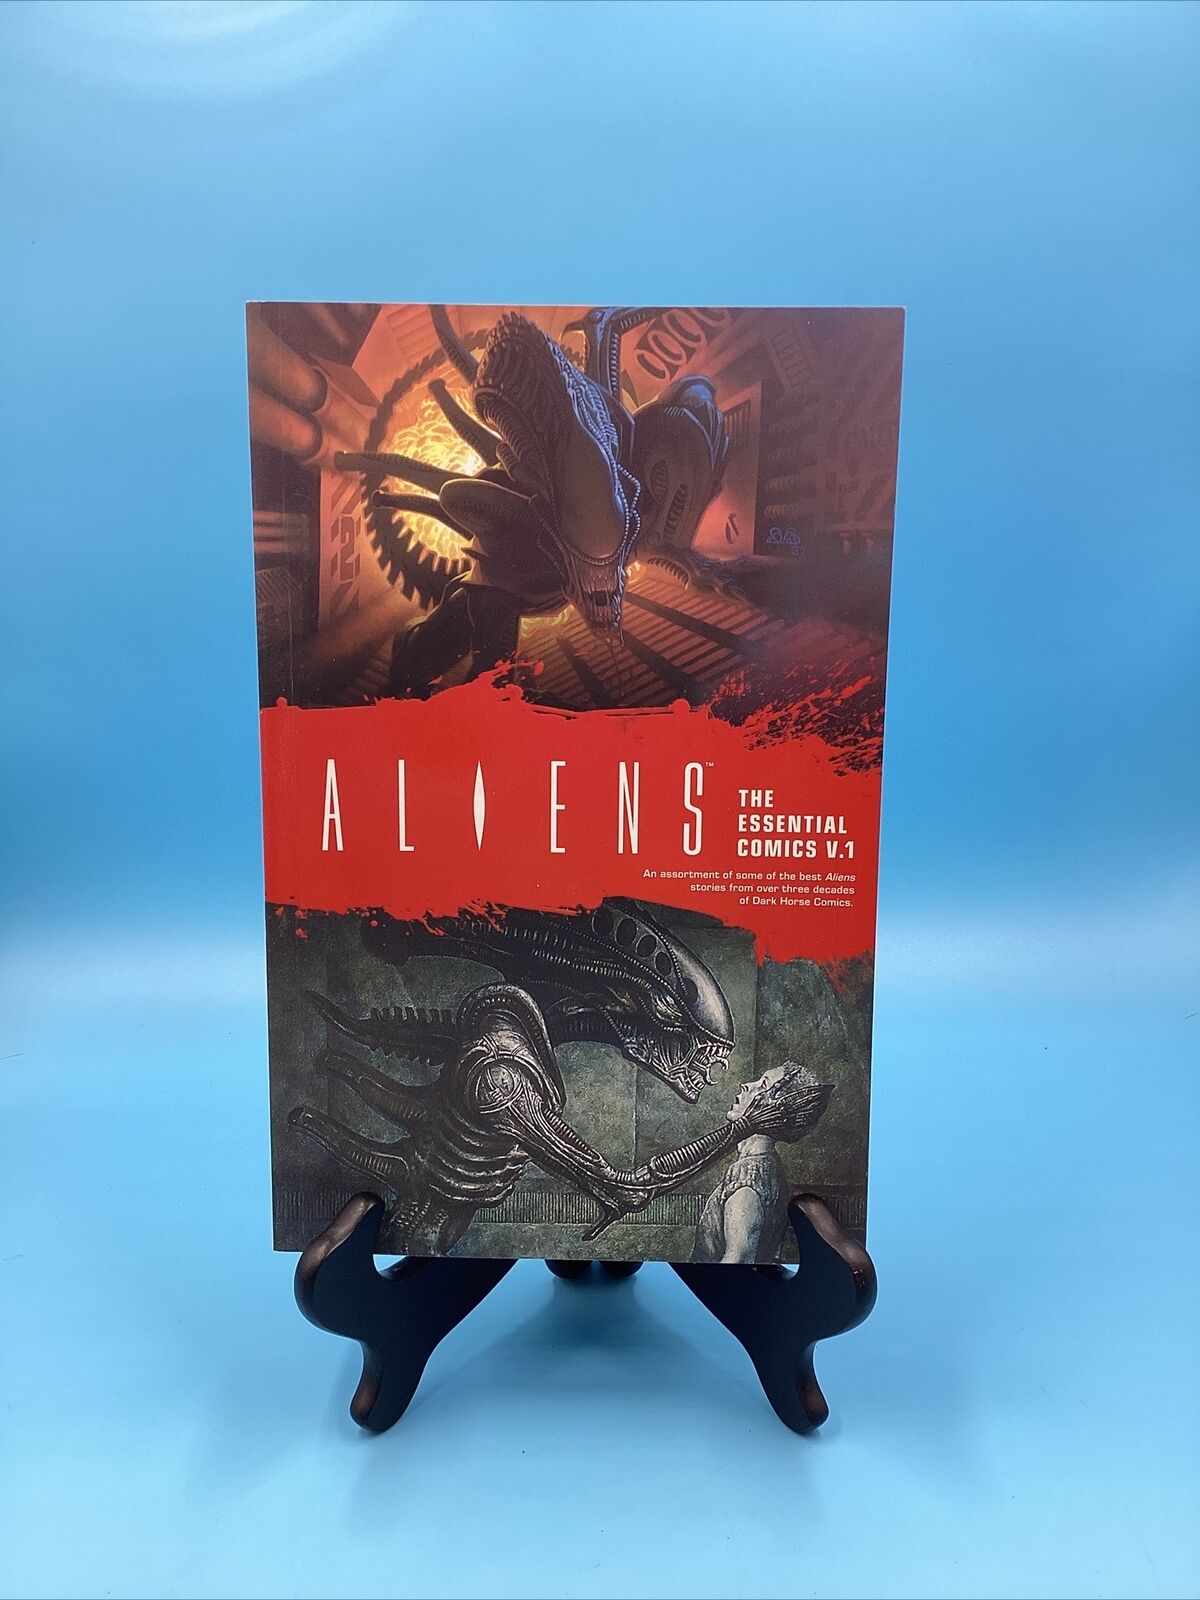 Aliens: The Essential Comics Vol. 1 Dark Horse Trade Paperback Horror Comics